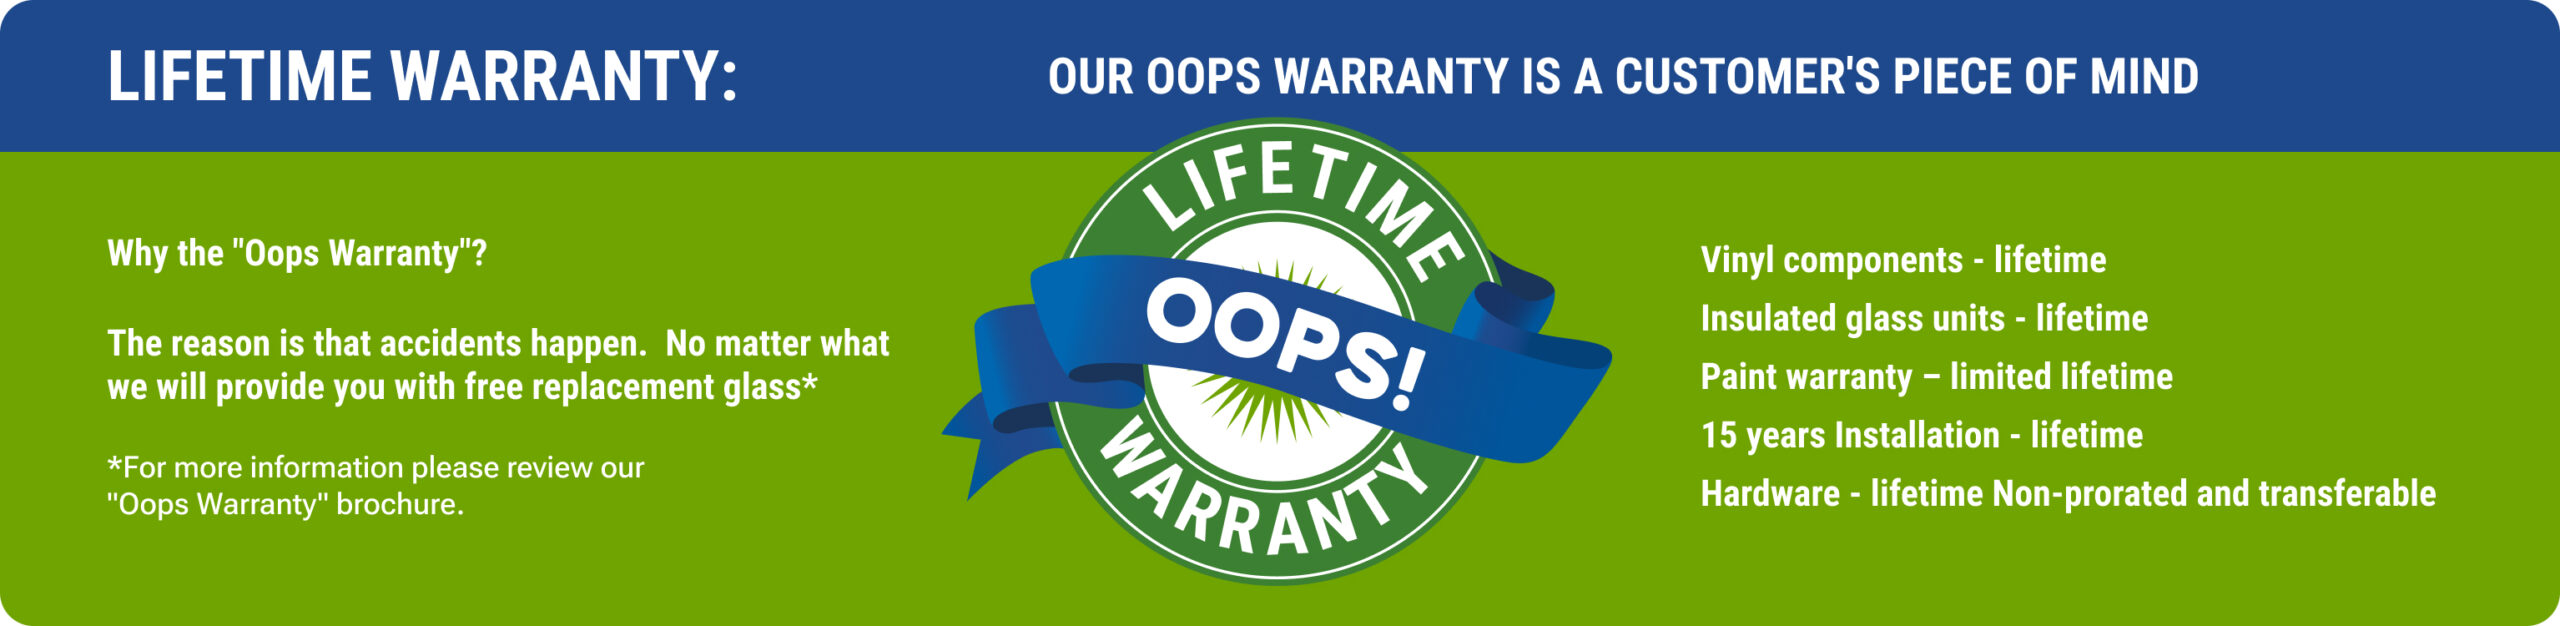 warranty_desc